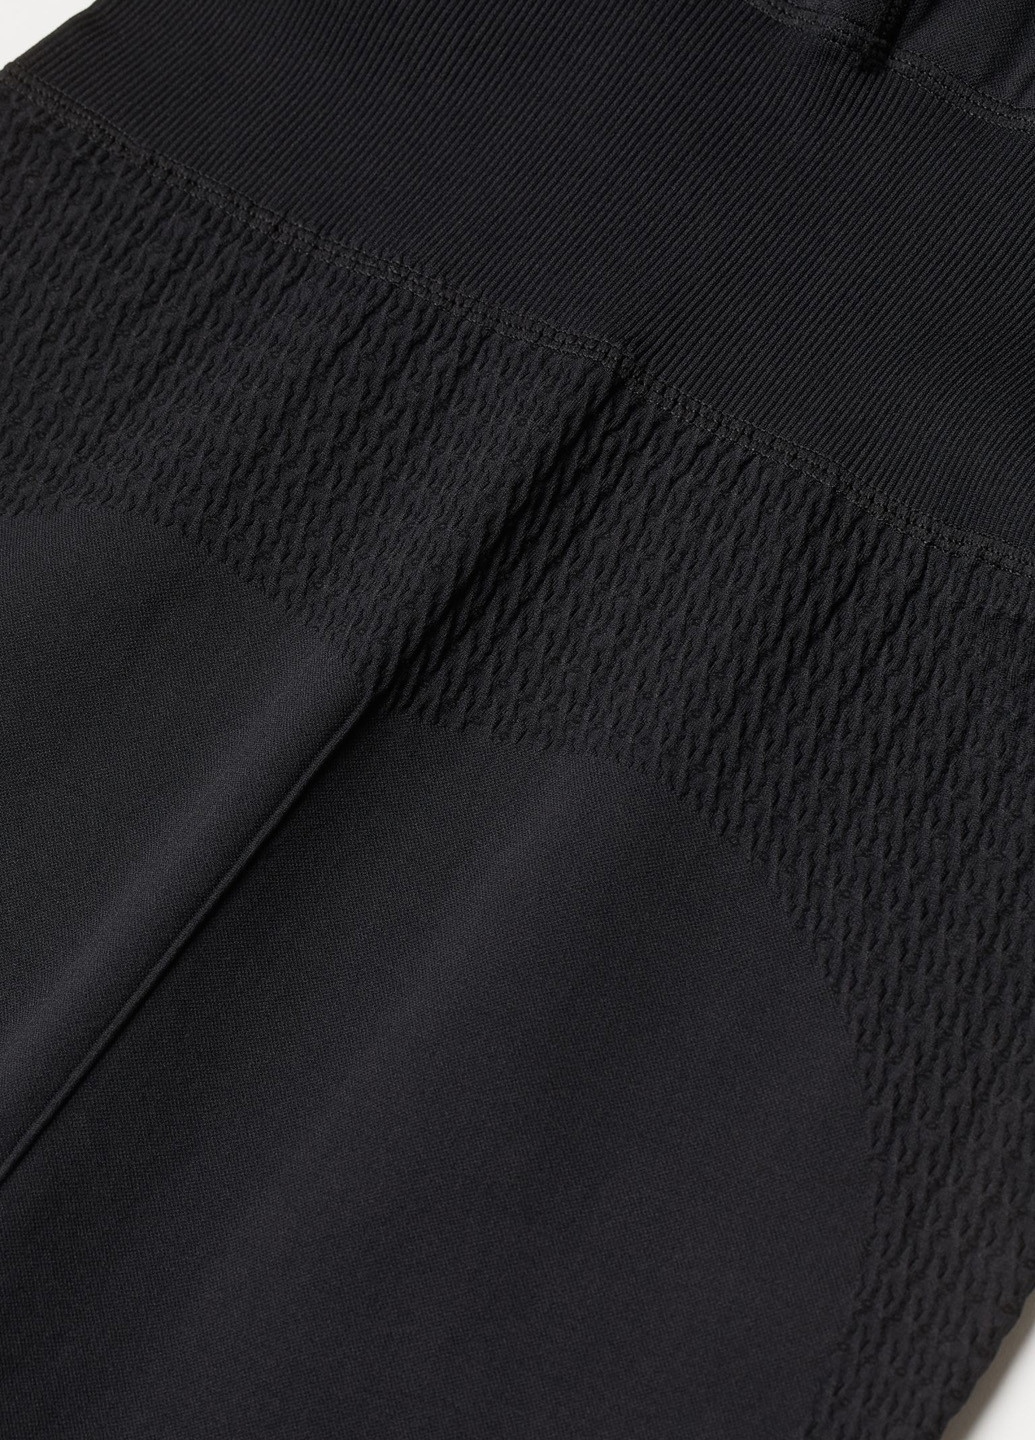 Комбінезон H&M комбінезон-брюки однотонний чорний спортивний поліамід, трикотаж